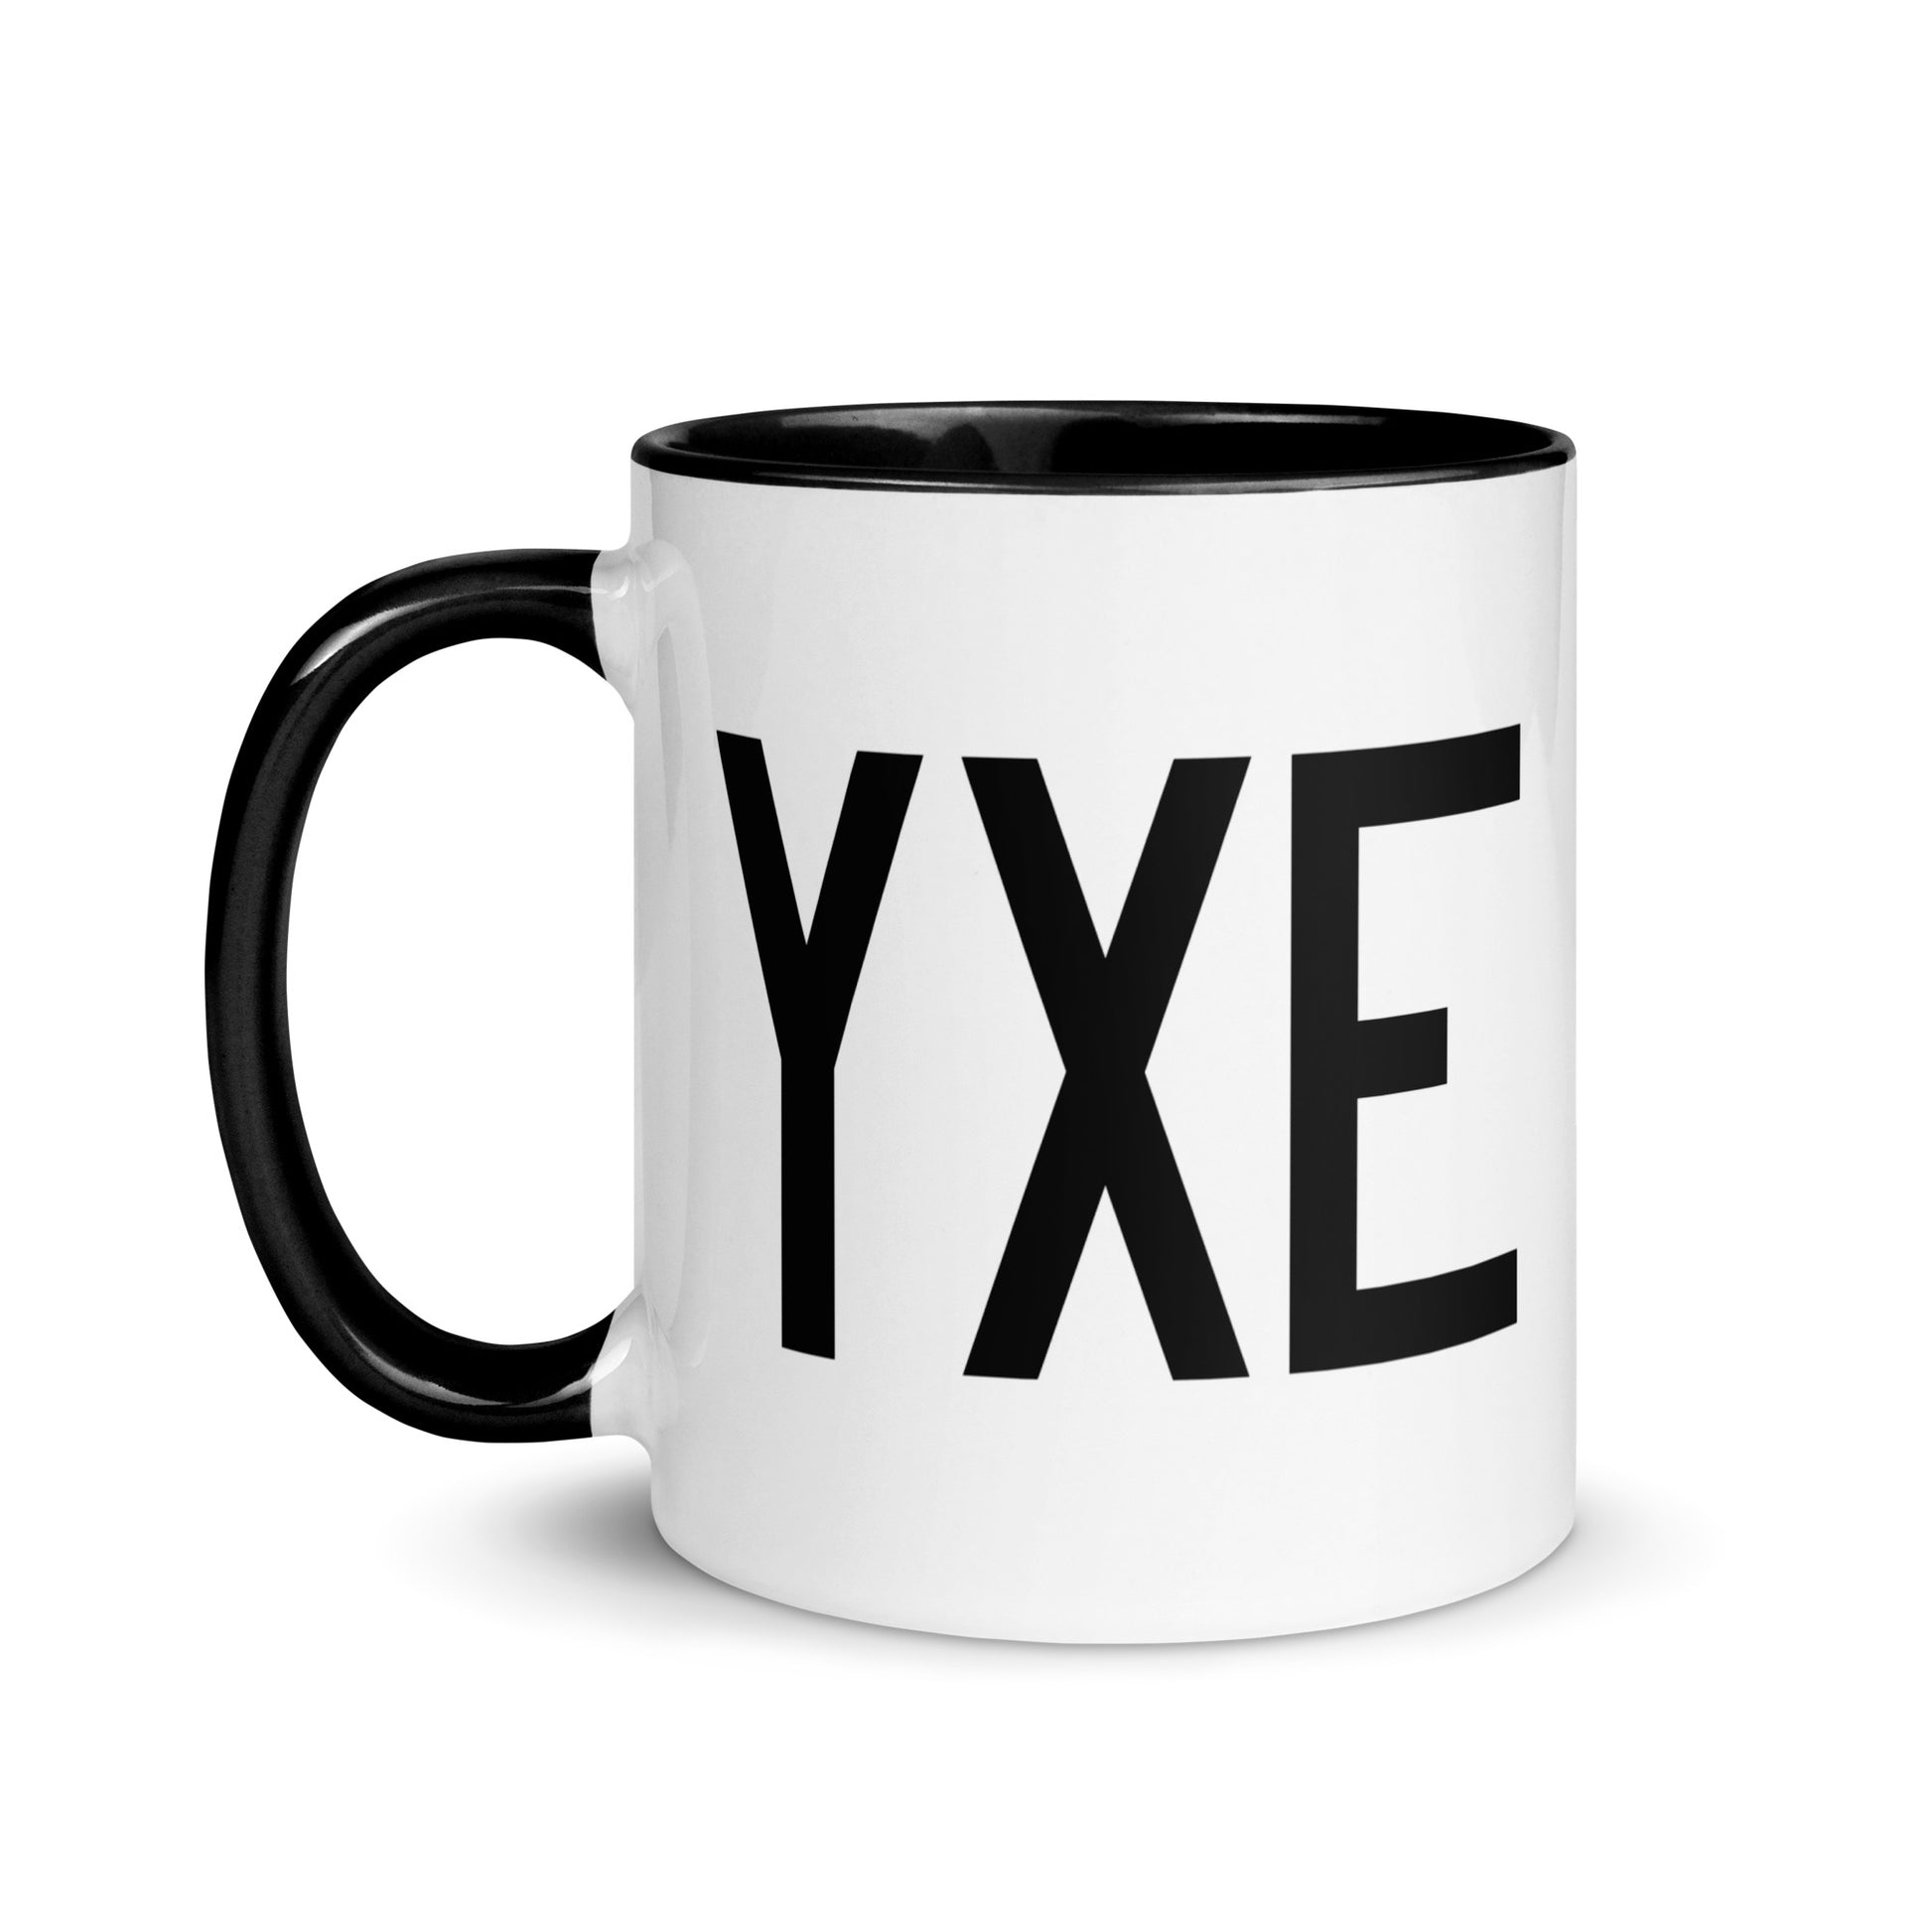 Airport Code Coffee Mug - Black • YXE Saskatoon • YHM Designs - Image 03